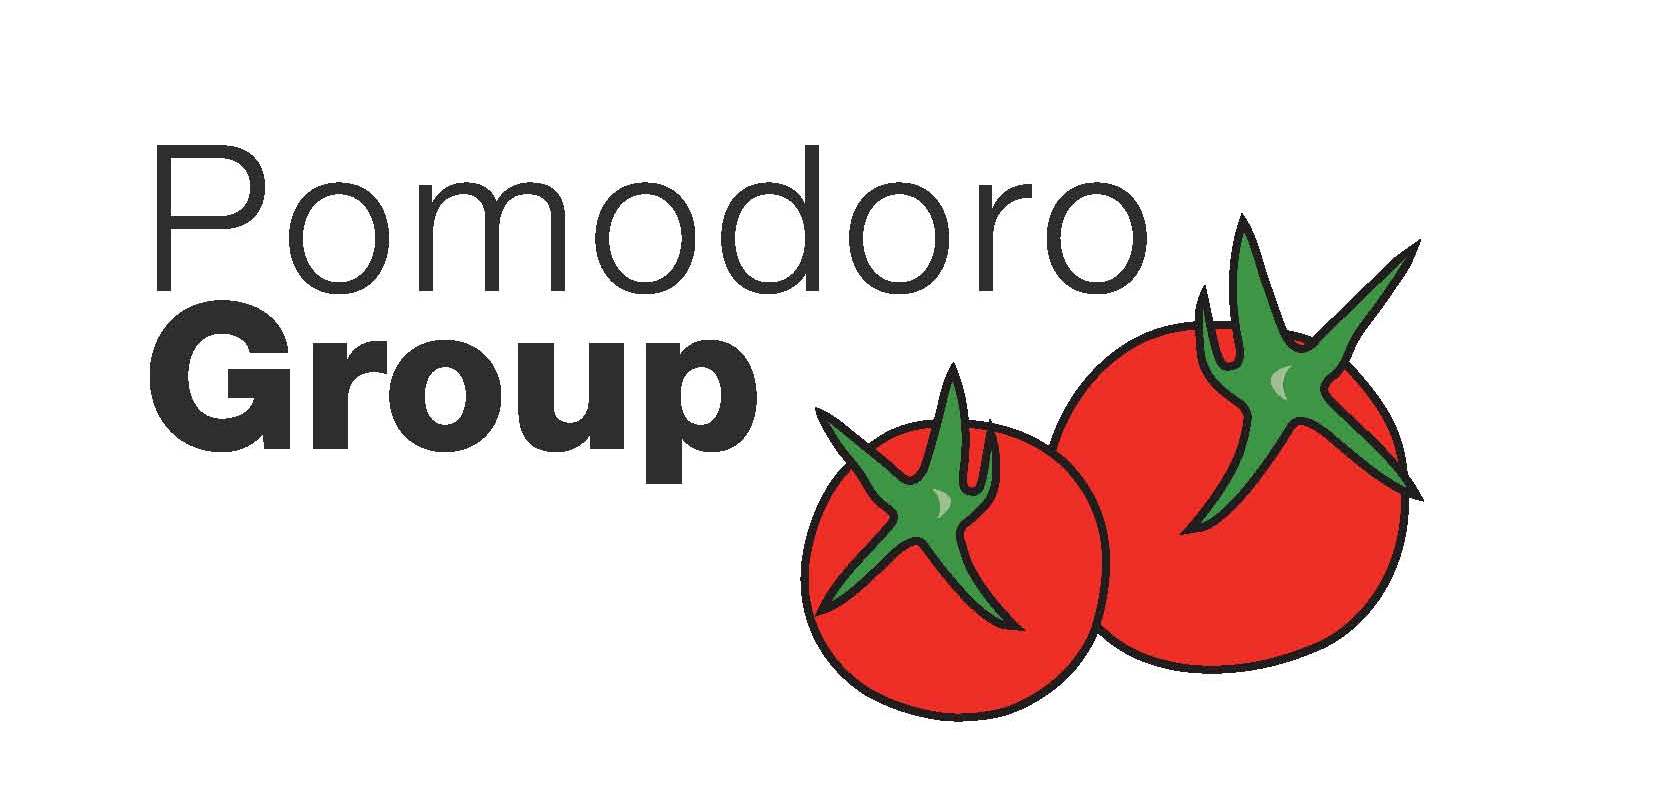 บริษัทโพโมโดโรกรุ๊ป จำกัด logo โลโก้